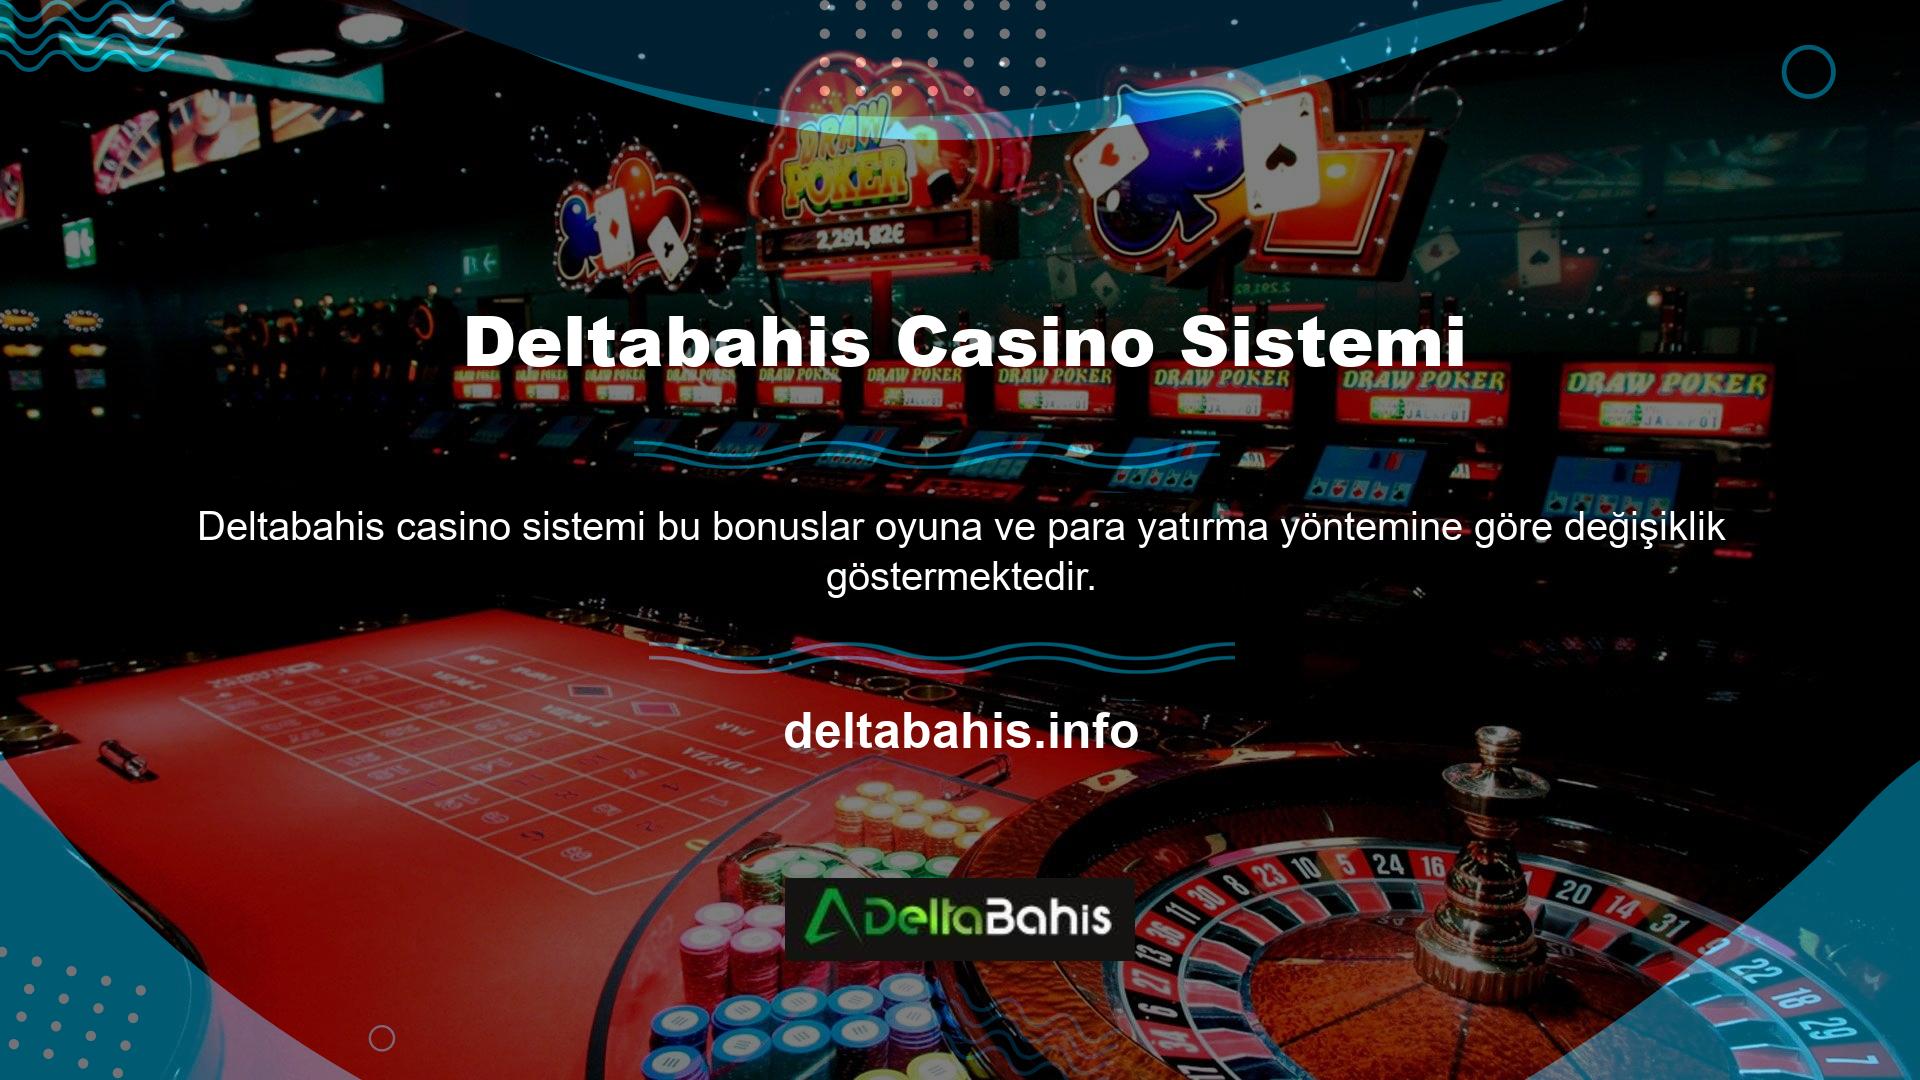 Deltabahis Casino sisteminin genel üyelik ve kayıt sürecine benzer şekilde, hemen hemen her bahis kategorisine özel bonuslar mevcut olup, her bonusun kendine has hüküm ve koşulları bulunmaktadır